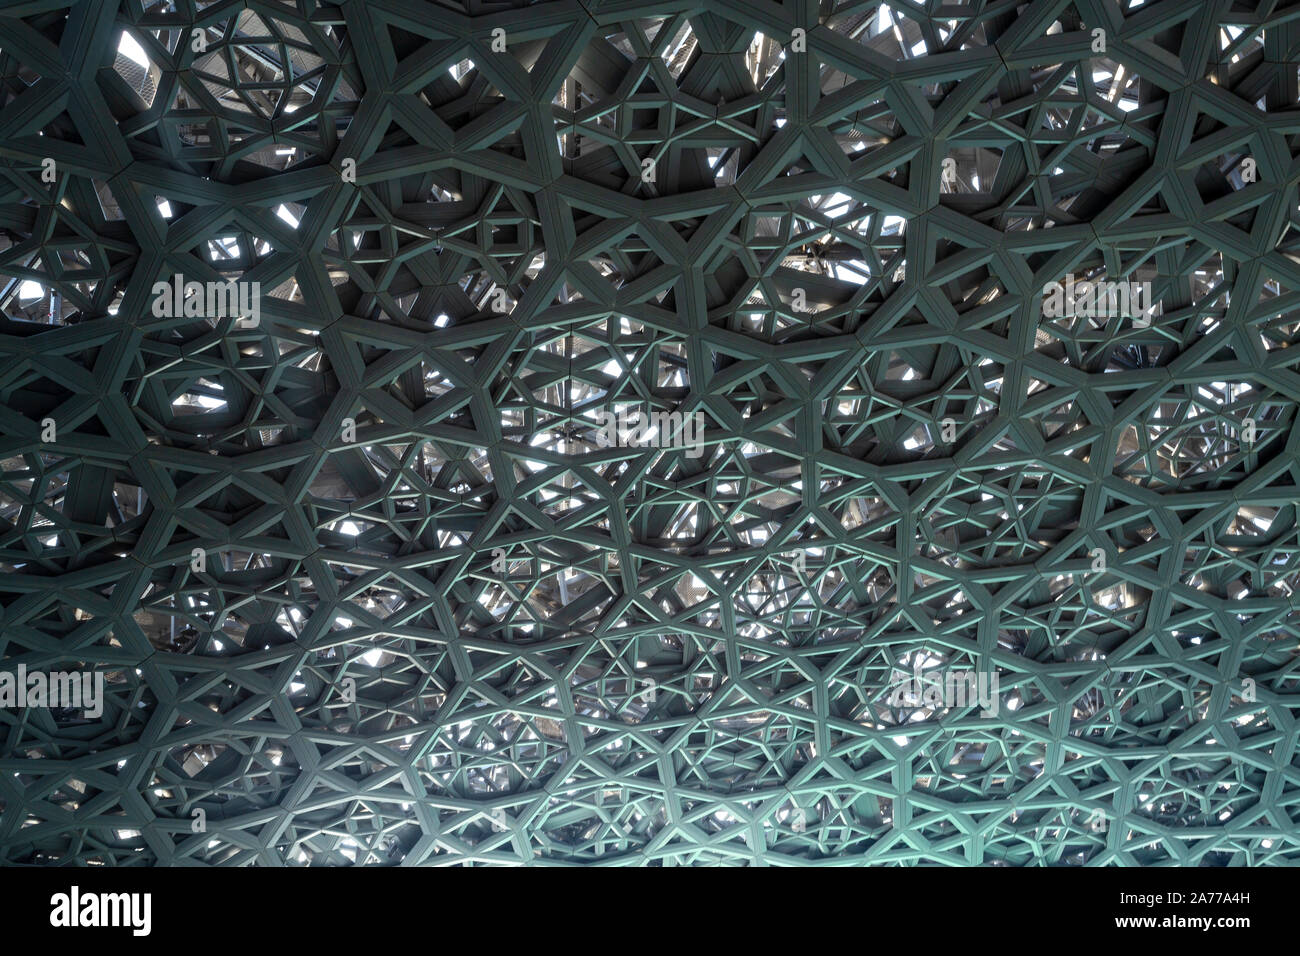 Innerhalb der Web gemusterten Kuppel, die die grüne Farbe des Persischen Golfs Gewässer, in Abu Dhabi, VAE, Vereinigte Arabische Emirate Stockfoto